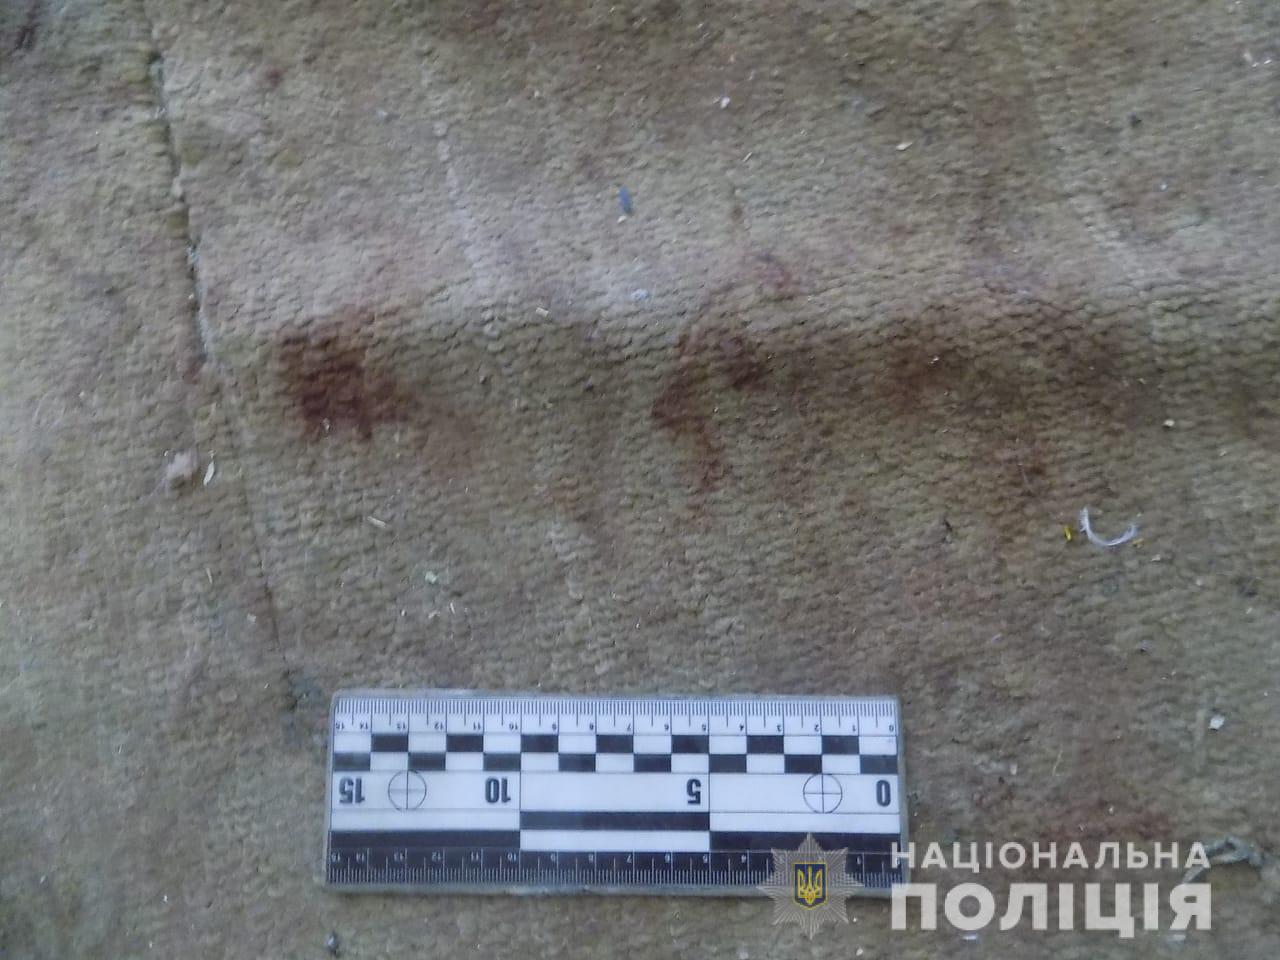 В Белгород-Днестровском районе сын из-за бытовых дрязг забил мать до смерти